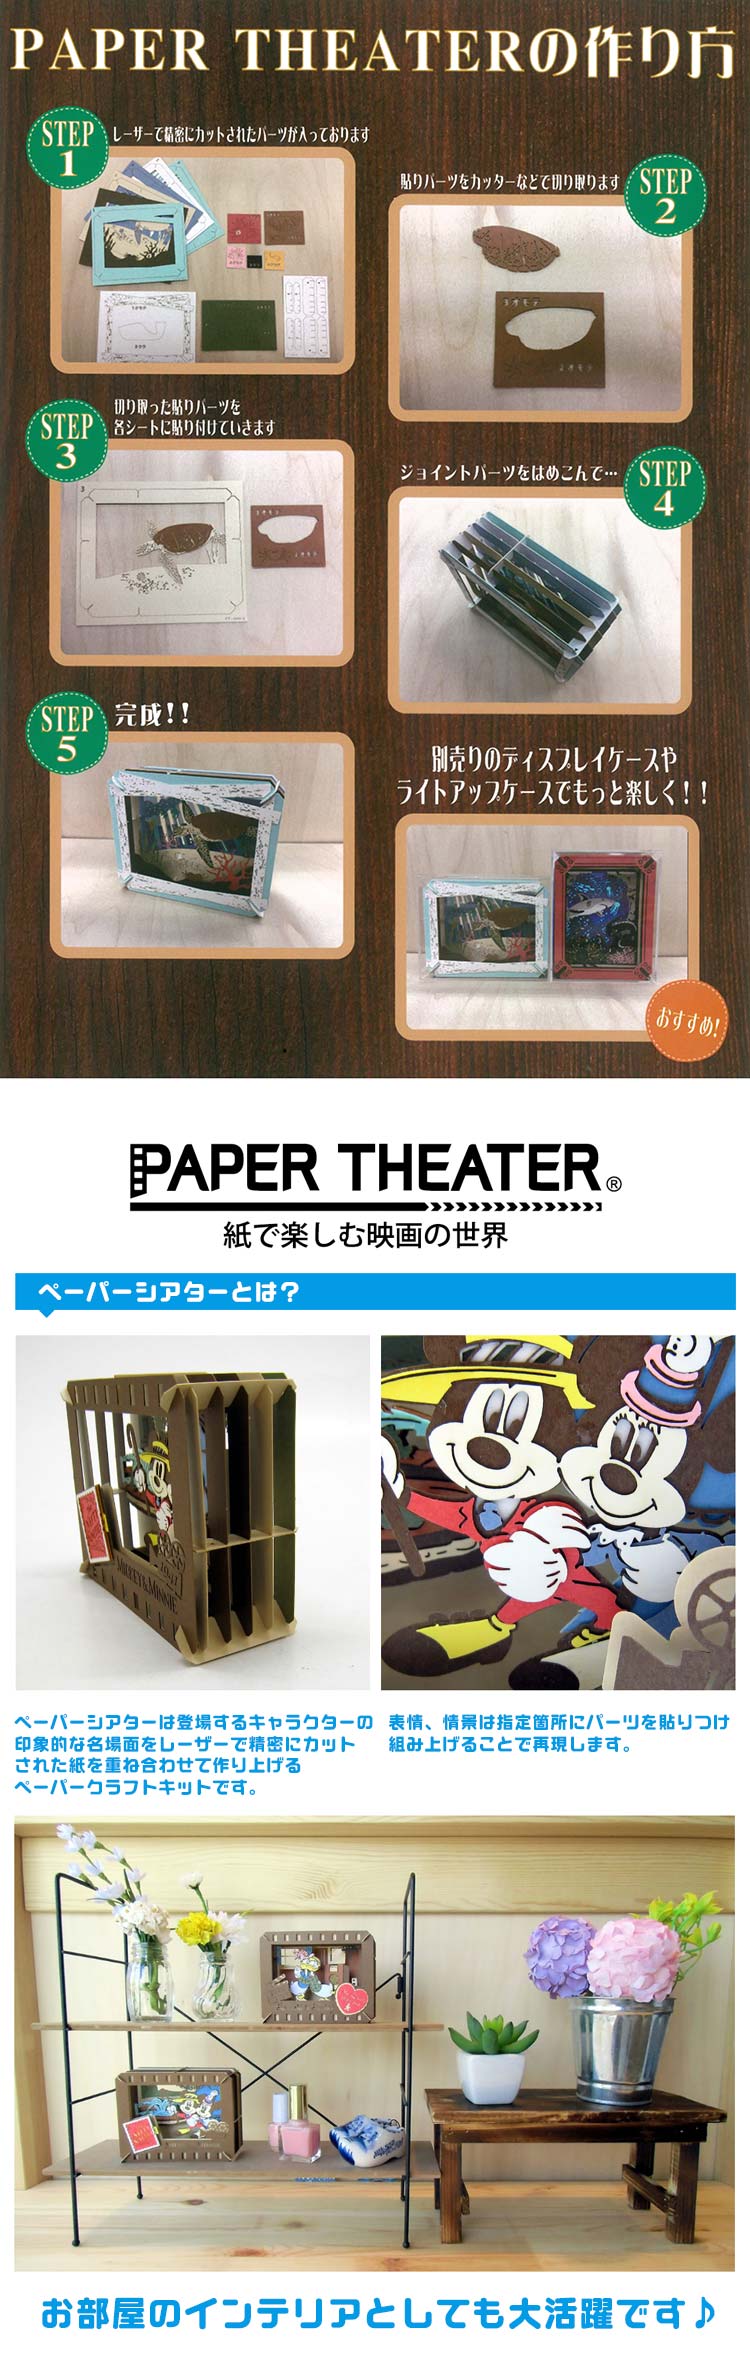 Paper Theater - 火影忍者 旗木卡卡西